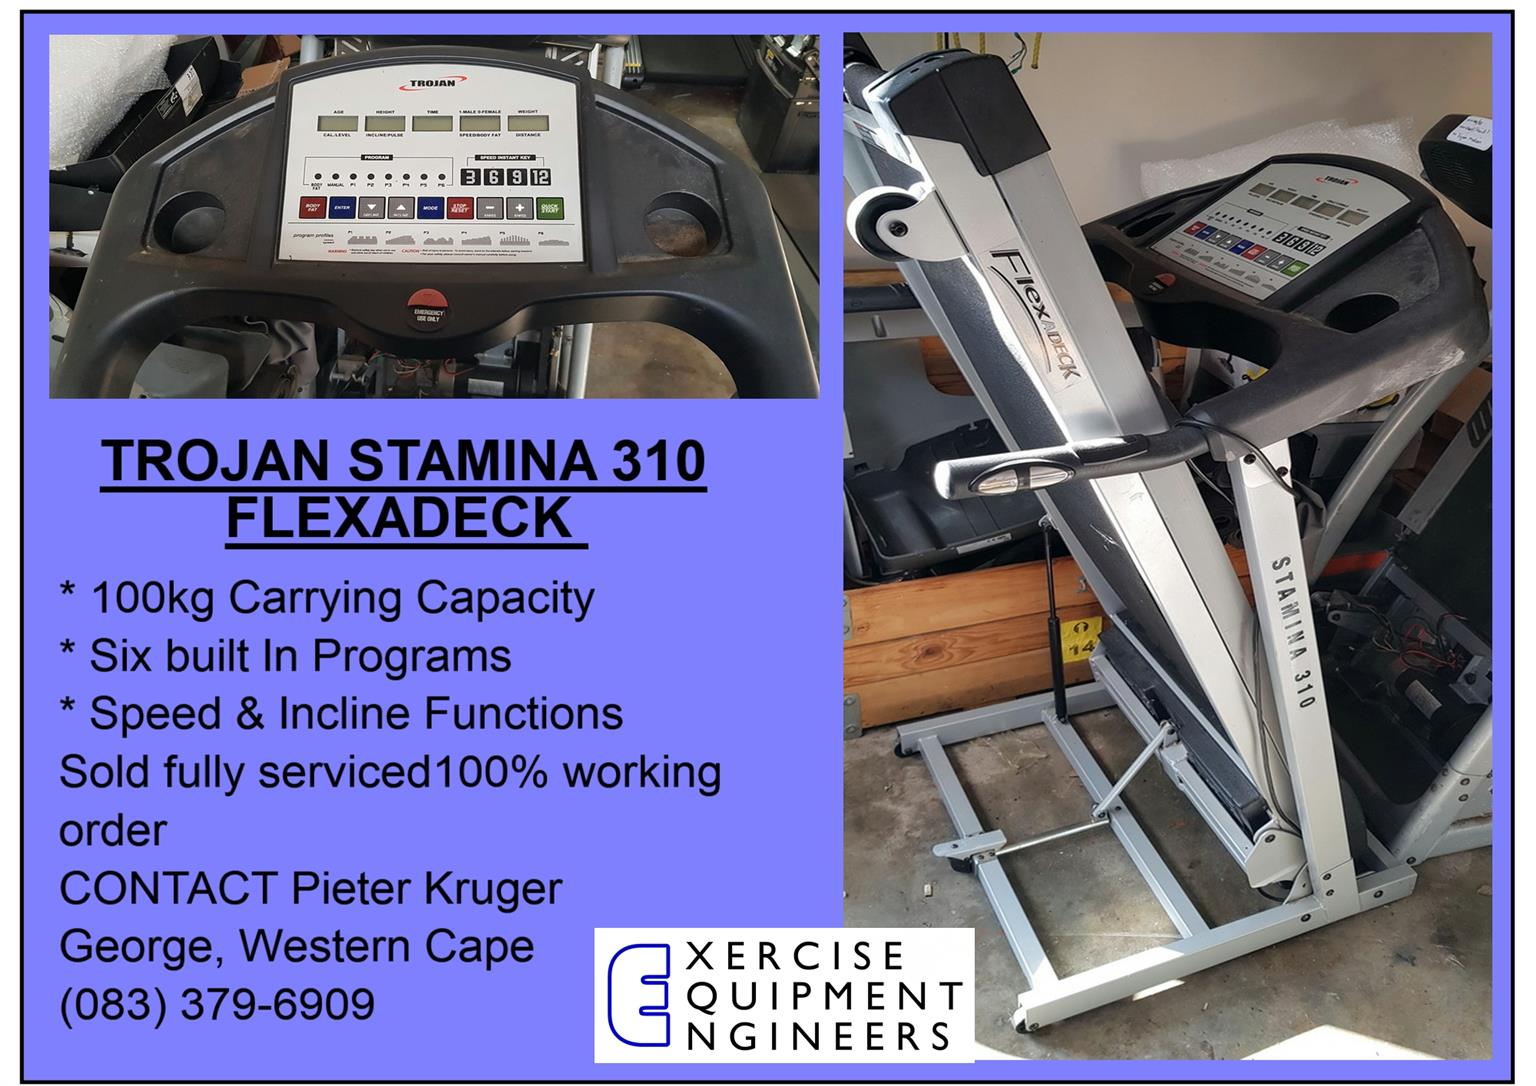 Trojan Stamina310 FlexADeck Treadmill